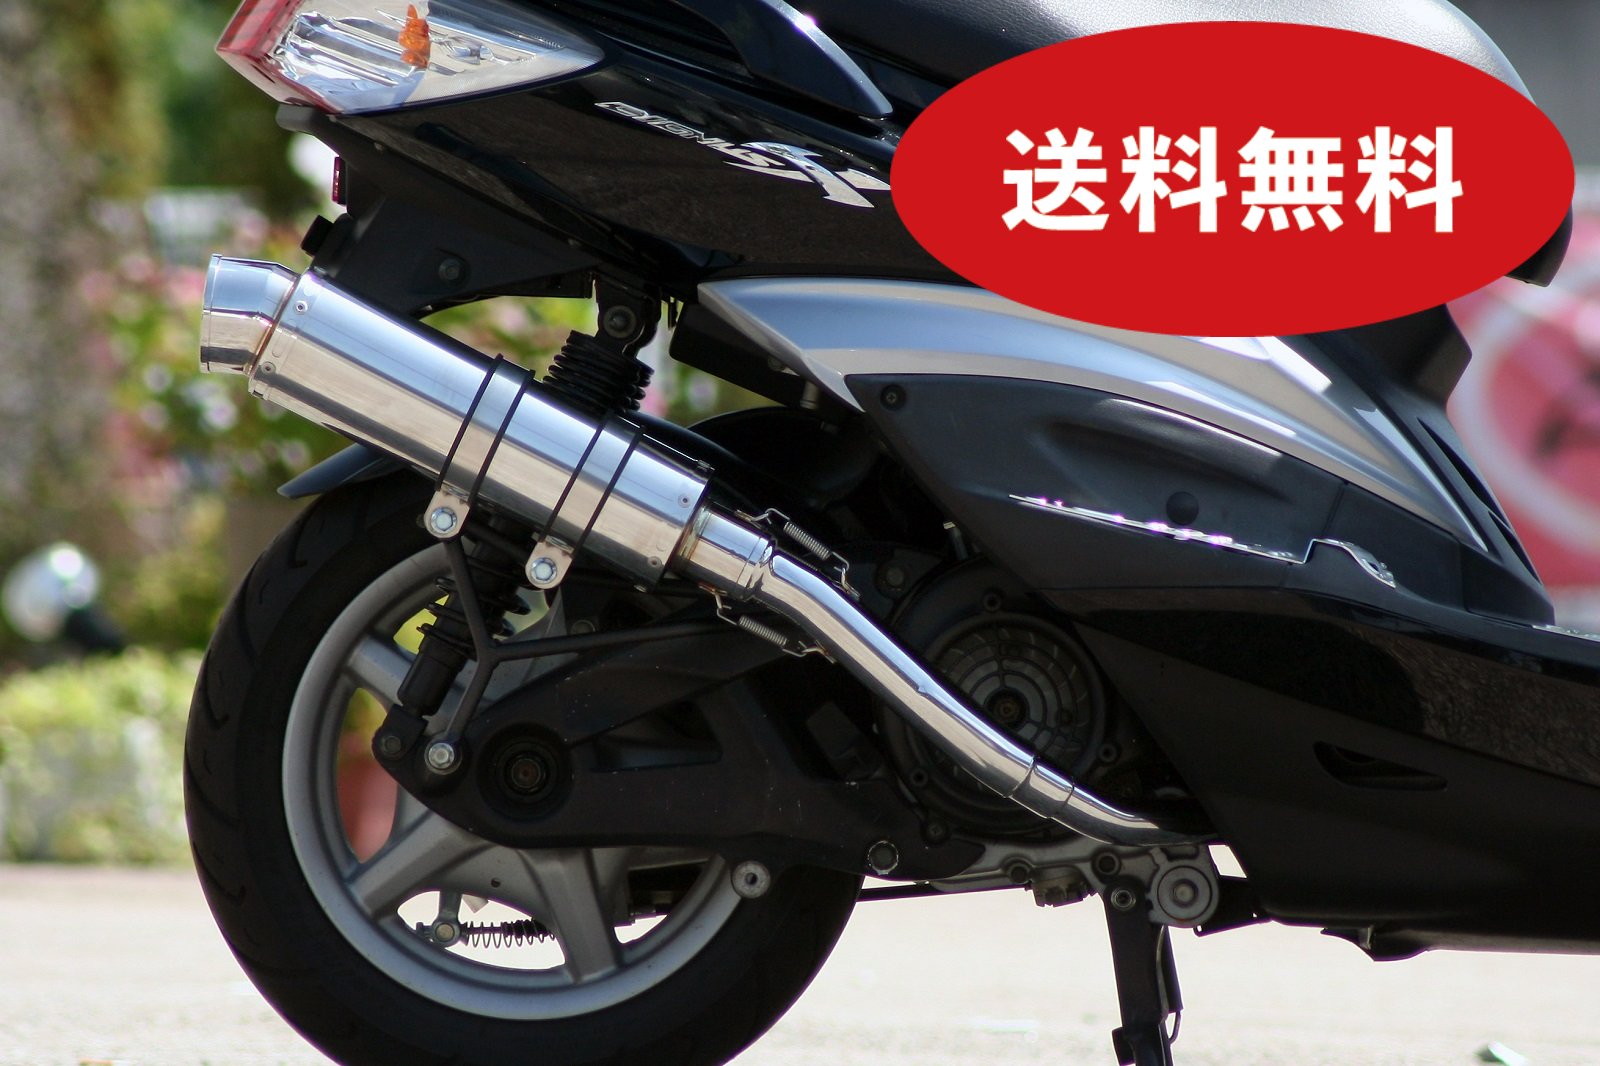 シグナスX バイクマフラー BC-SE12J EBJ-SE44J 1型 2型 3型 国内モデル R300 アップタイプ SUS ステンレス マフラー シルバーカラー バイク用品 バイク用 バイクパーツ フルエキ フルエキゾースト カスタム パーツ ドレスアップ 交換 社外品 CYGNUS-X